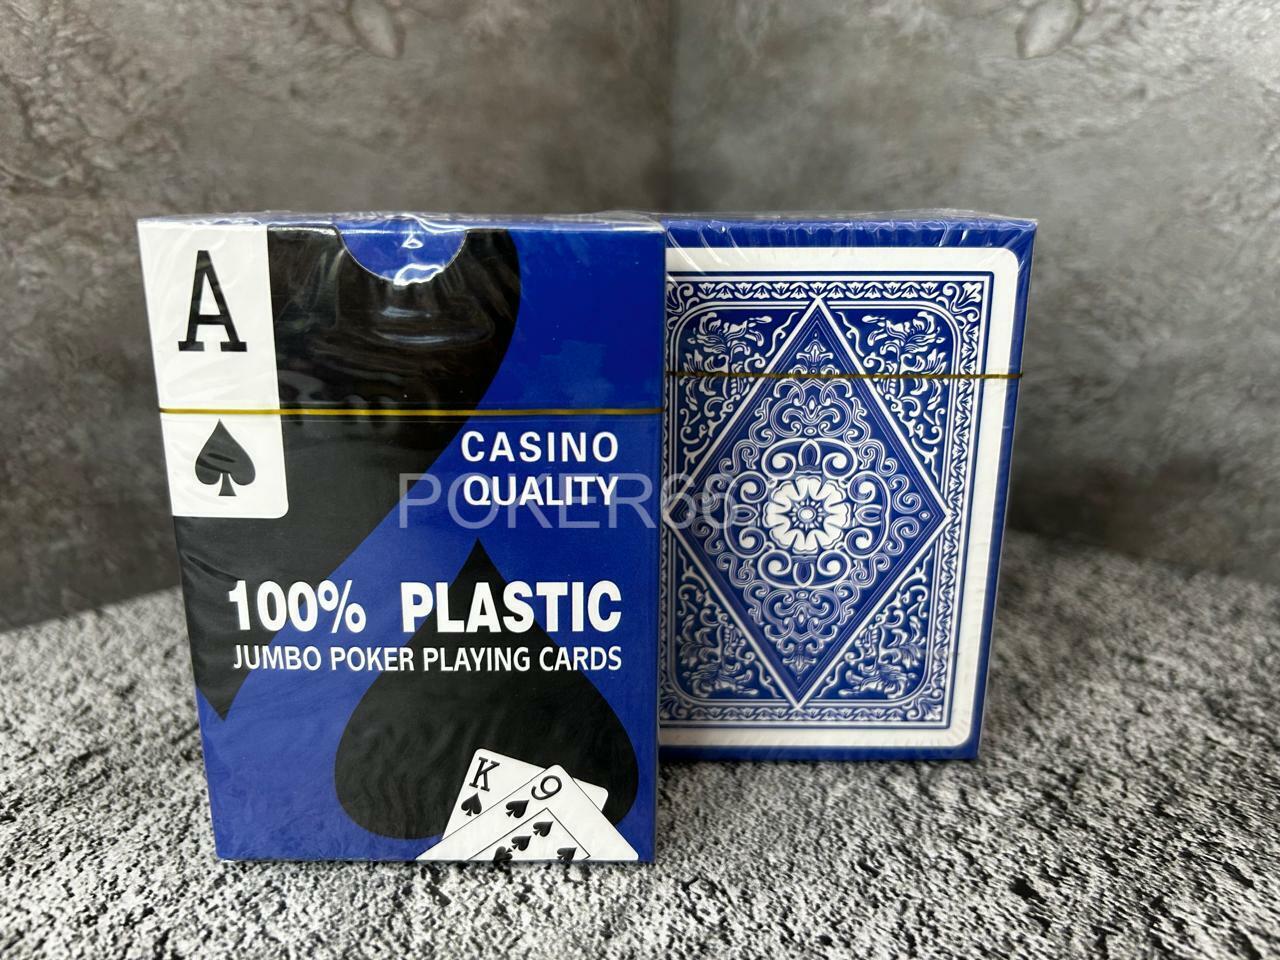 Покерные карты CASINO QUALITY JUMBO POKER 100% пластик